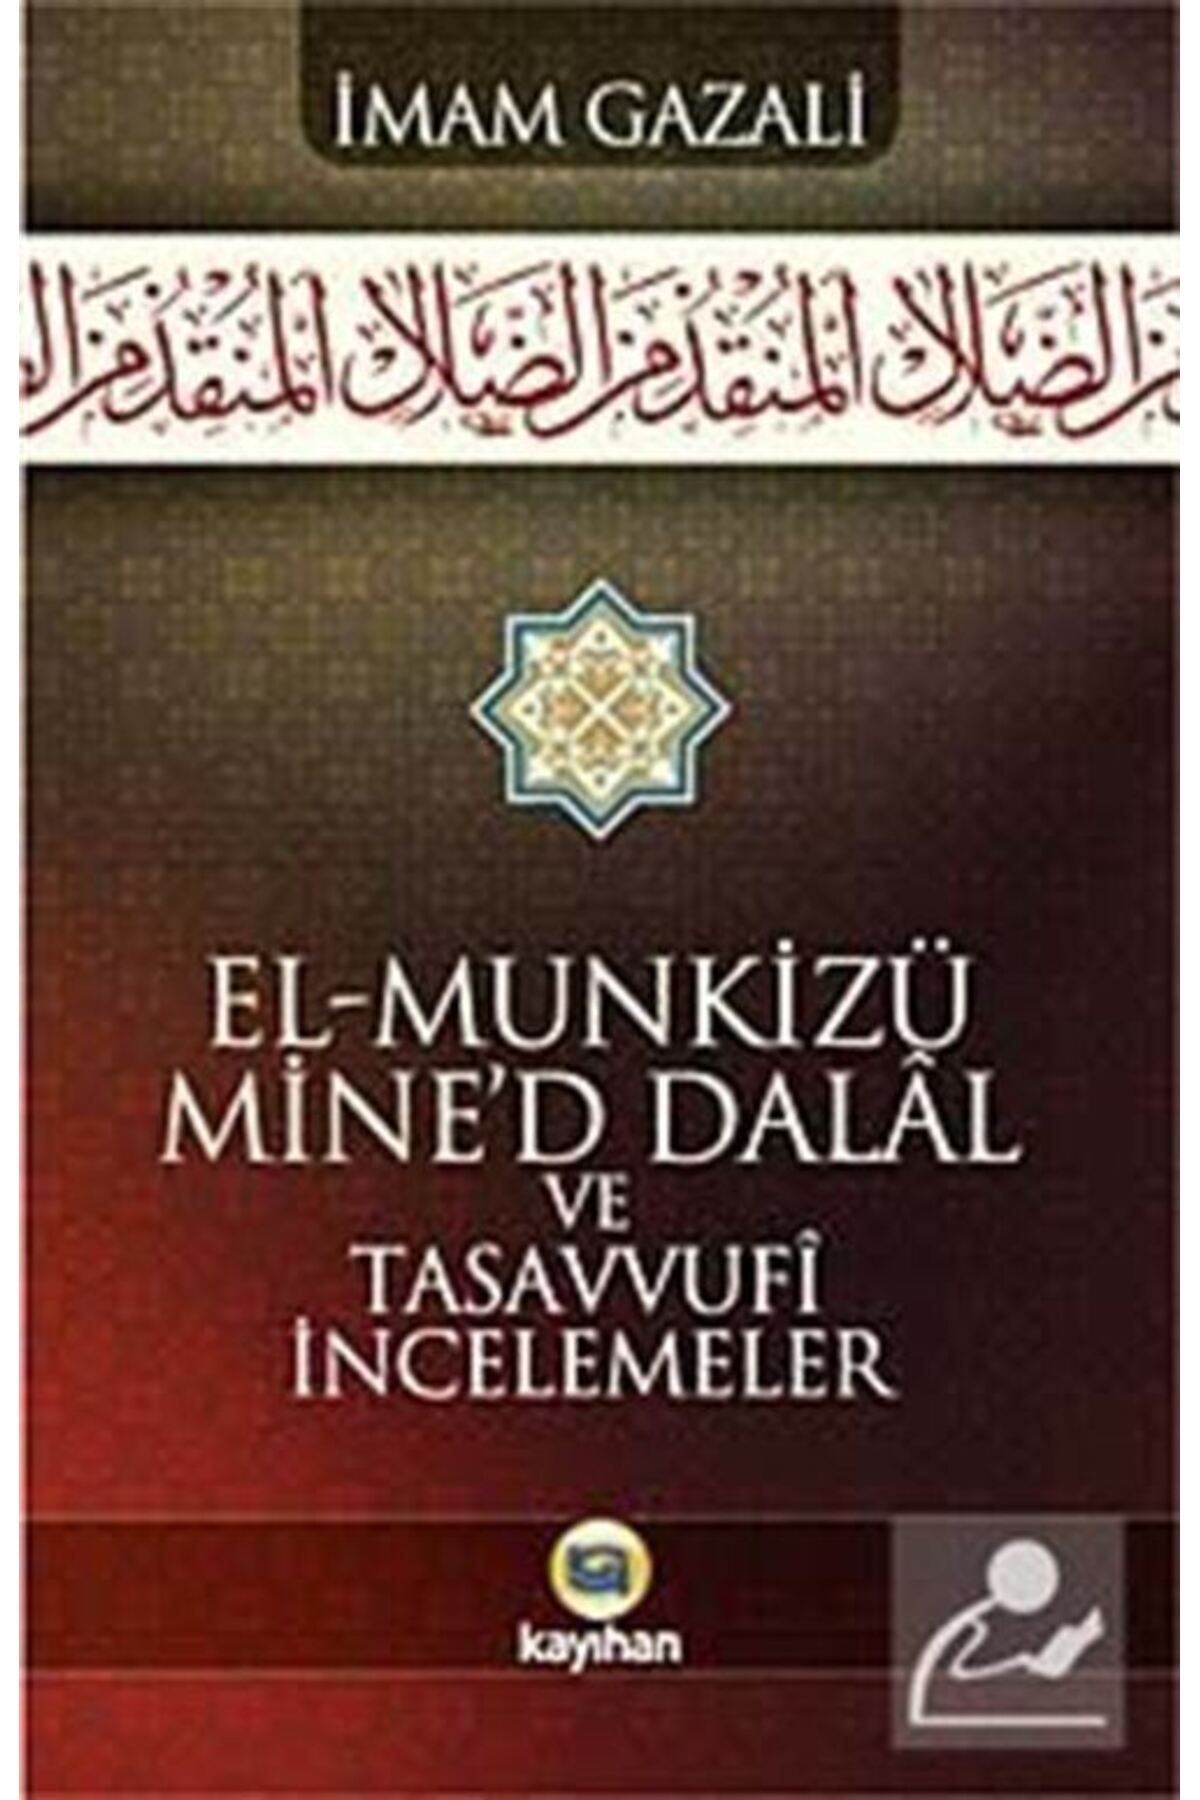 Kayıhan Yayınları El - Munkizü Mine’d Dalal Ve Tasavvufi Incelemeler - Imam-ı Gazali